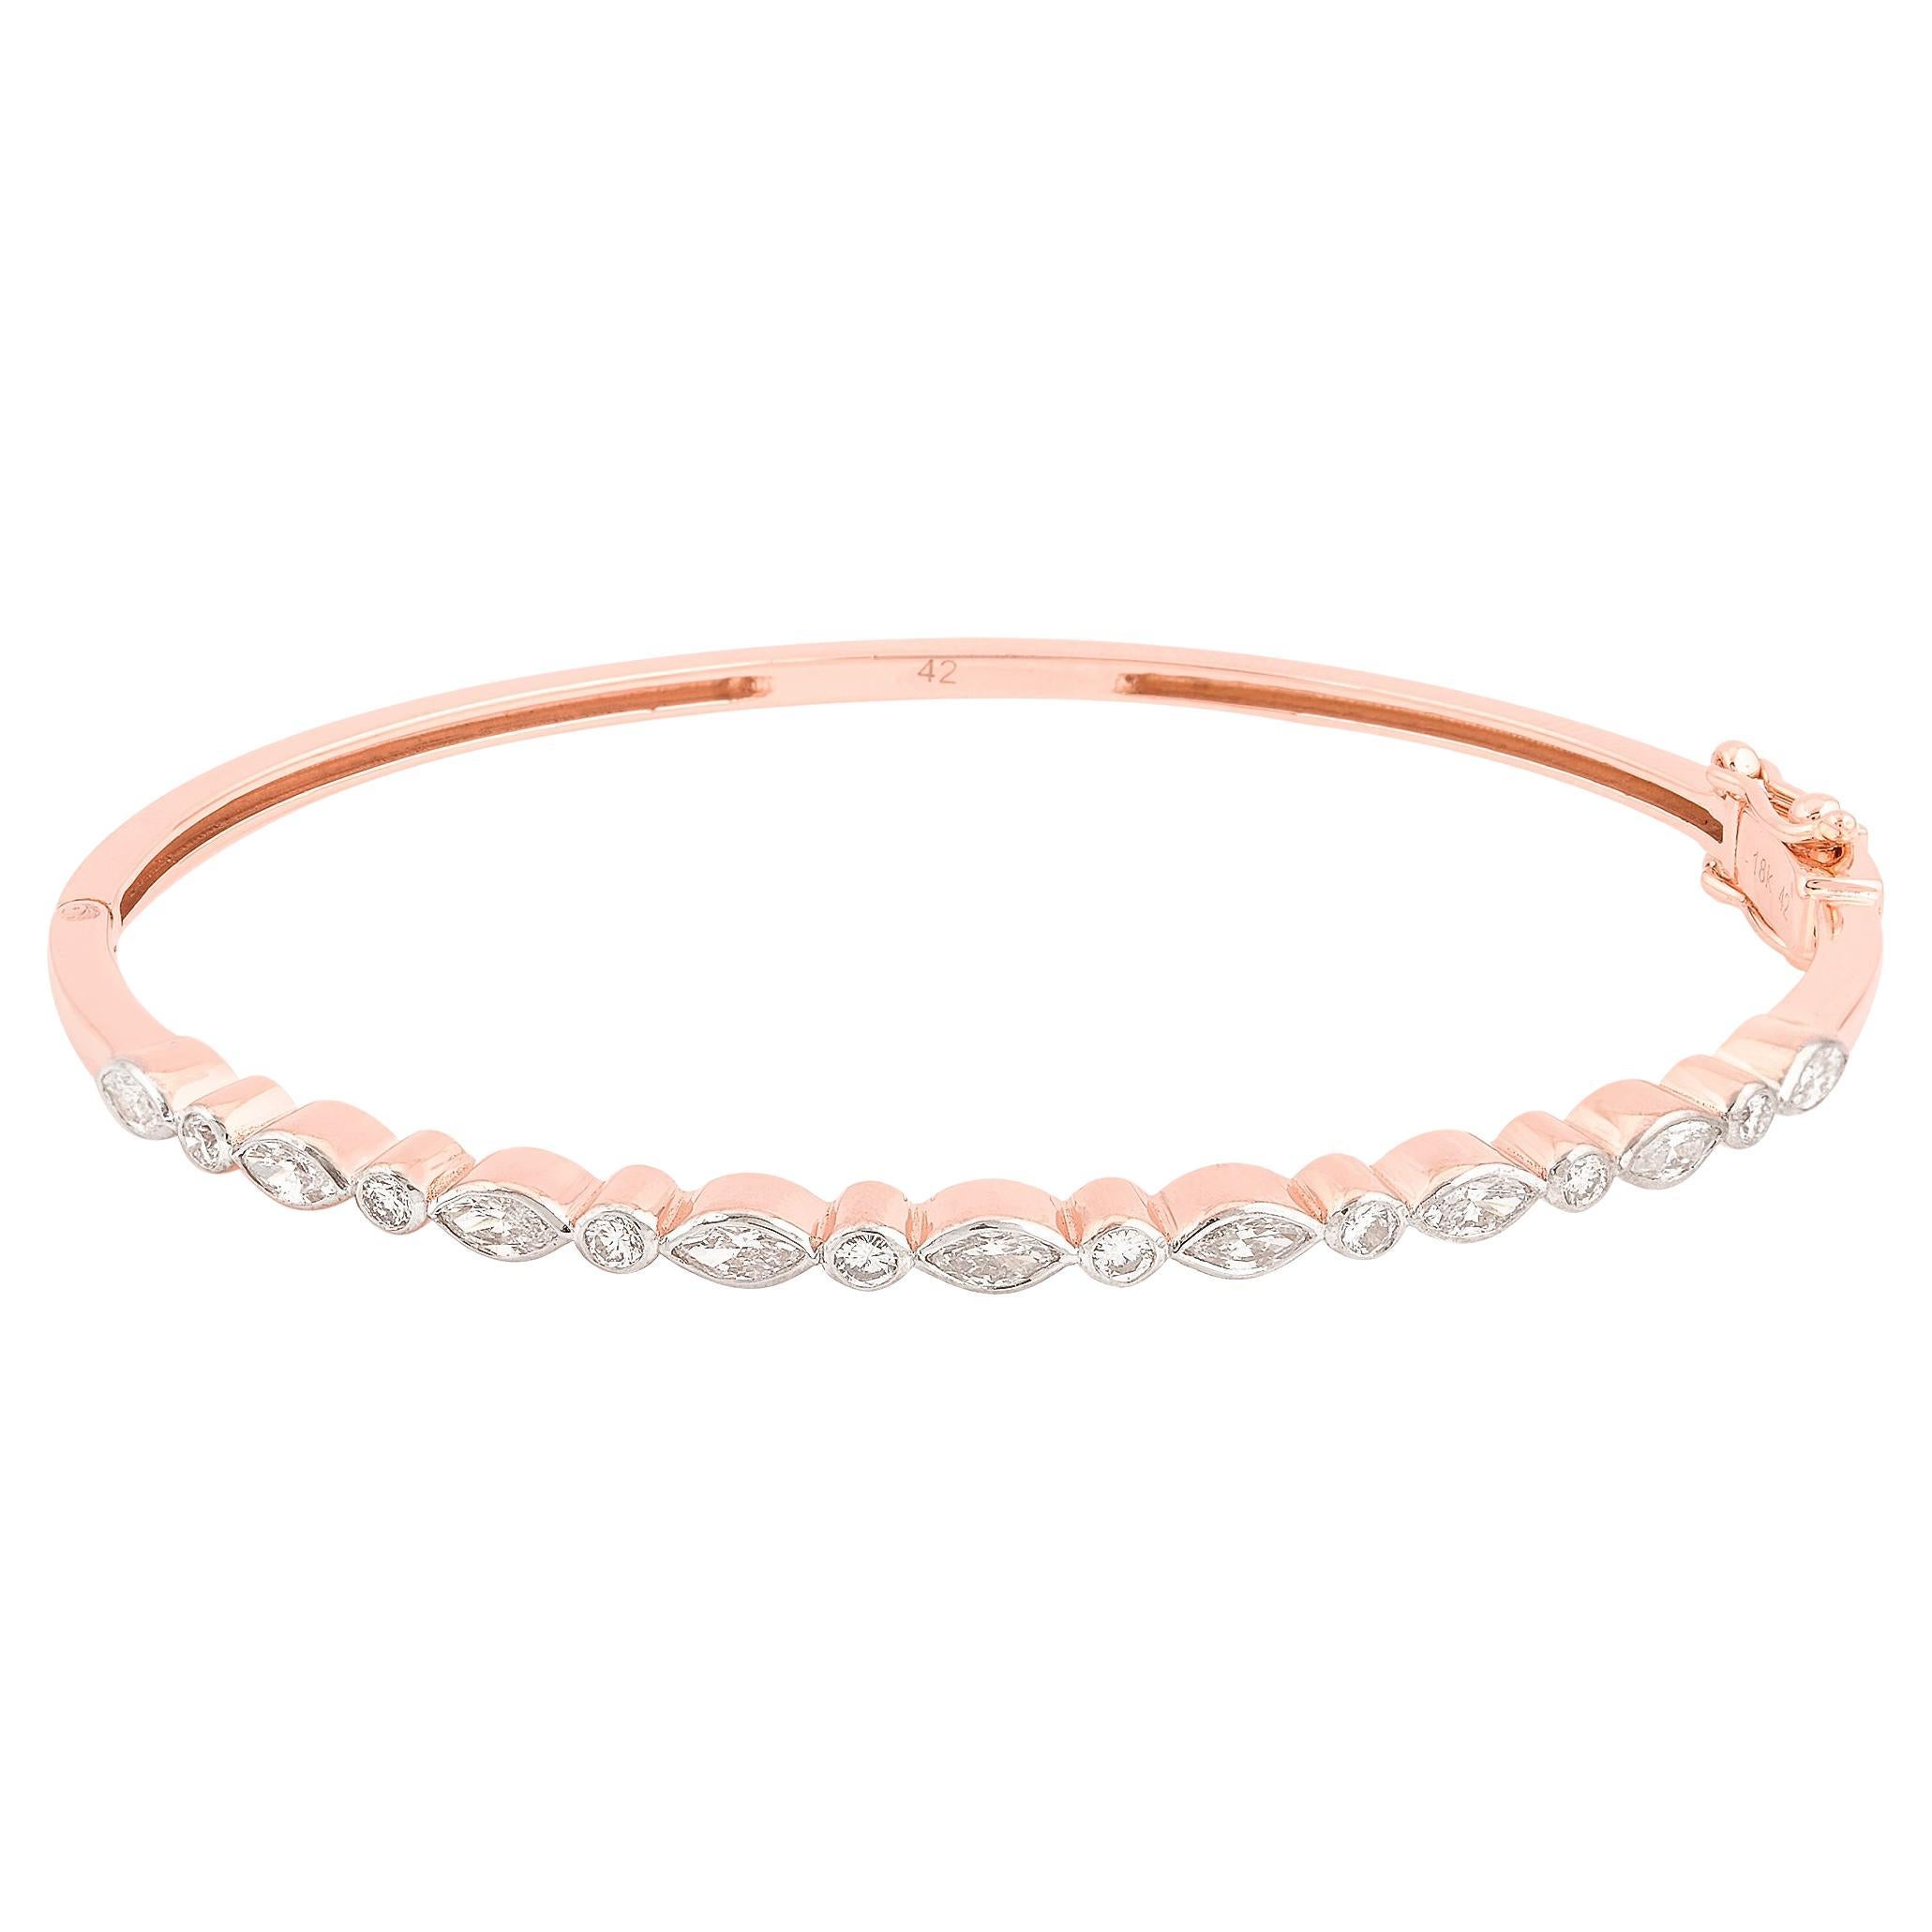 Bracelet jonc en or rose 14 carats avec diamants ronds et marquises, fabrication artisanale